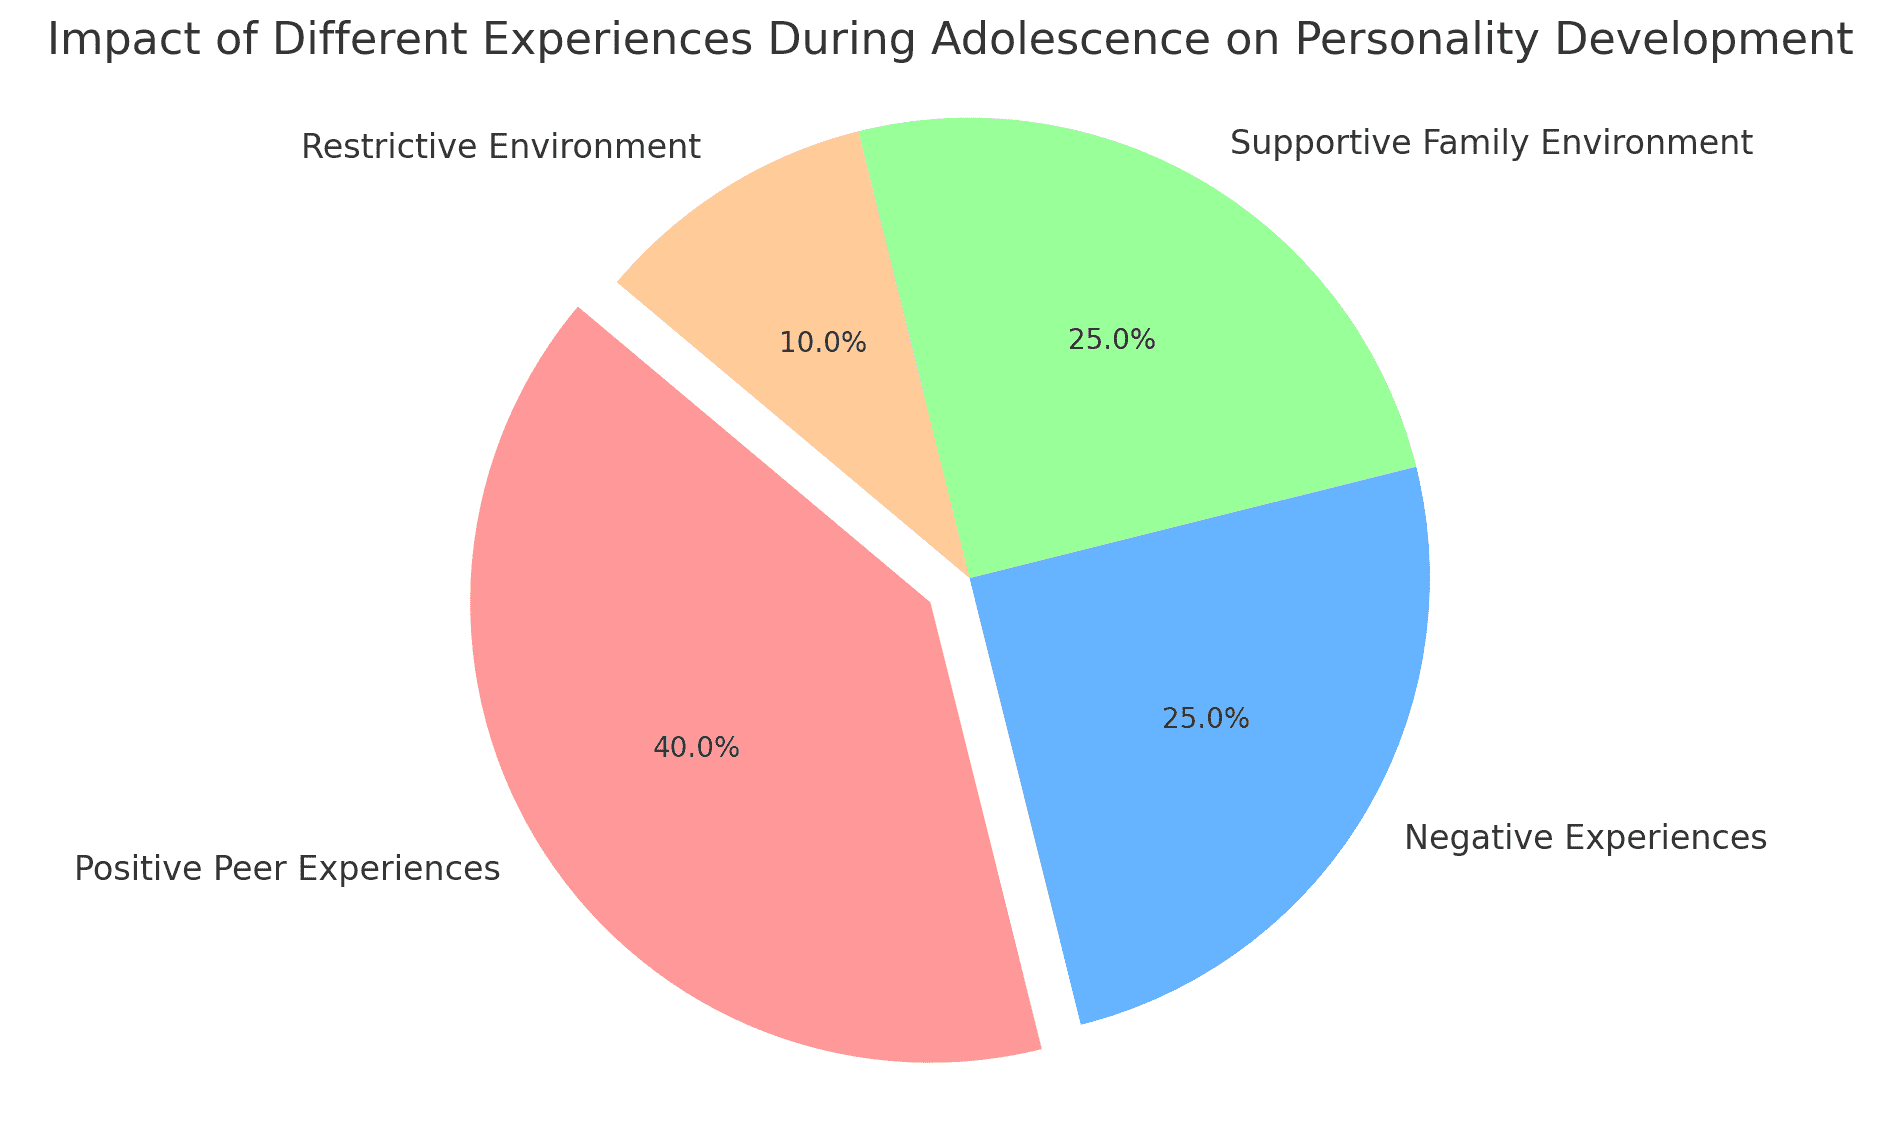 Ein Tortendiagramm, das die Auswirkungen verschiedener Erfahrungen im Jugendalter auf die Persönlichkeitsentwicklung zeigt. Es stellt den prozentualen Anteil positiver Peer-Erfahrungen, negativer Erfahrungen, einer unterstützenden familiären Umgebung und restriktiver Umgebungen dar.